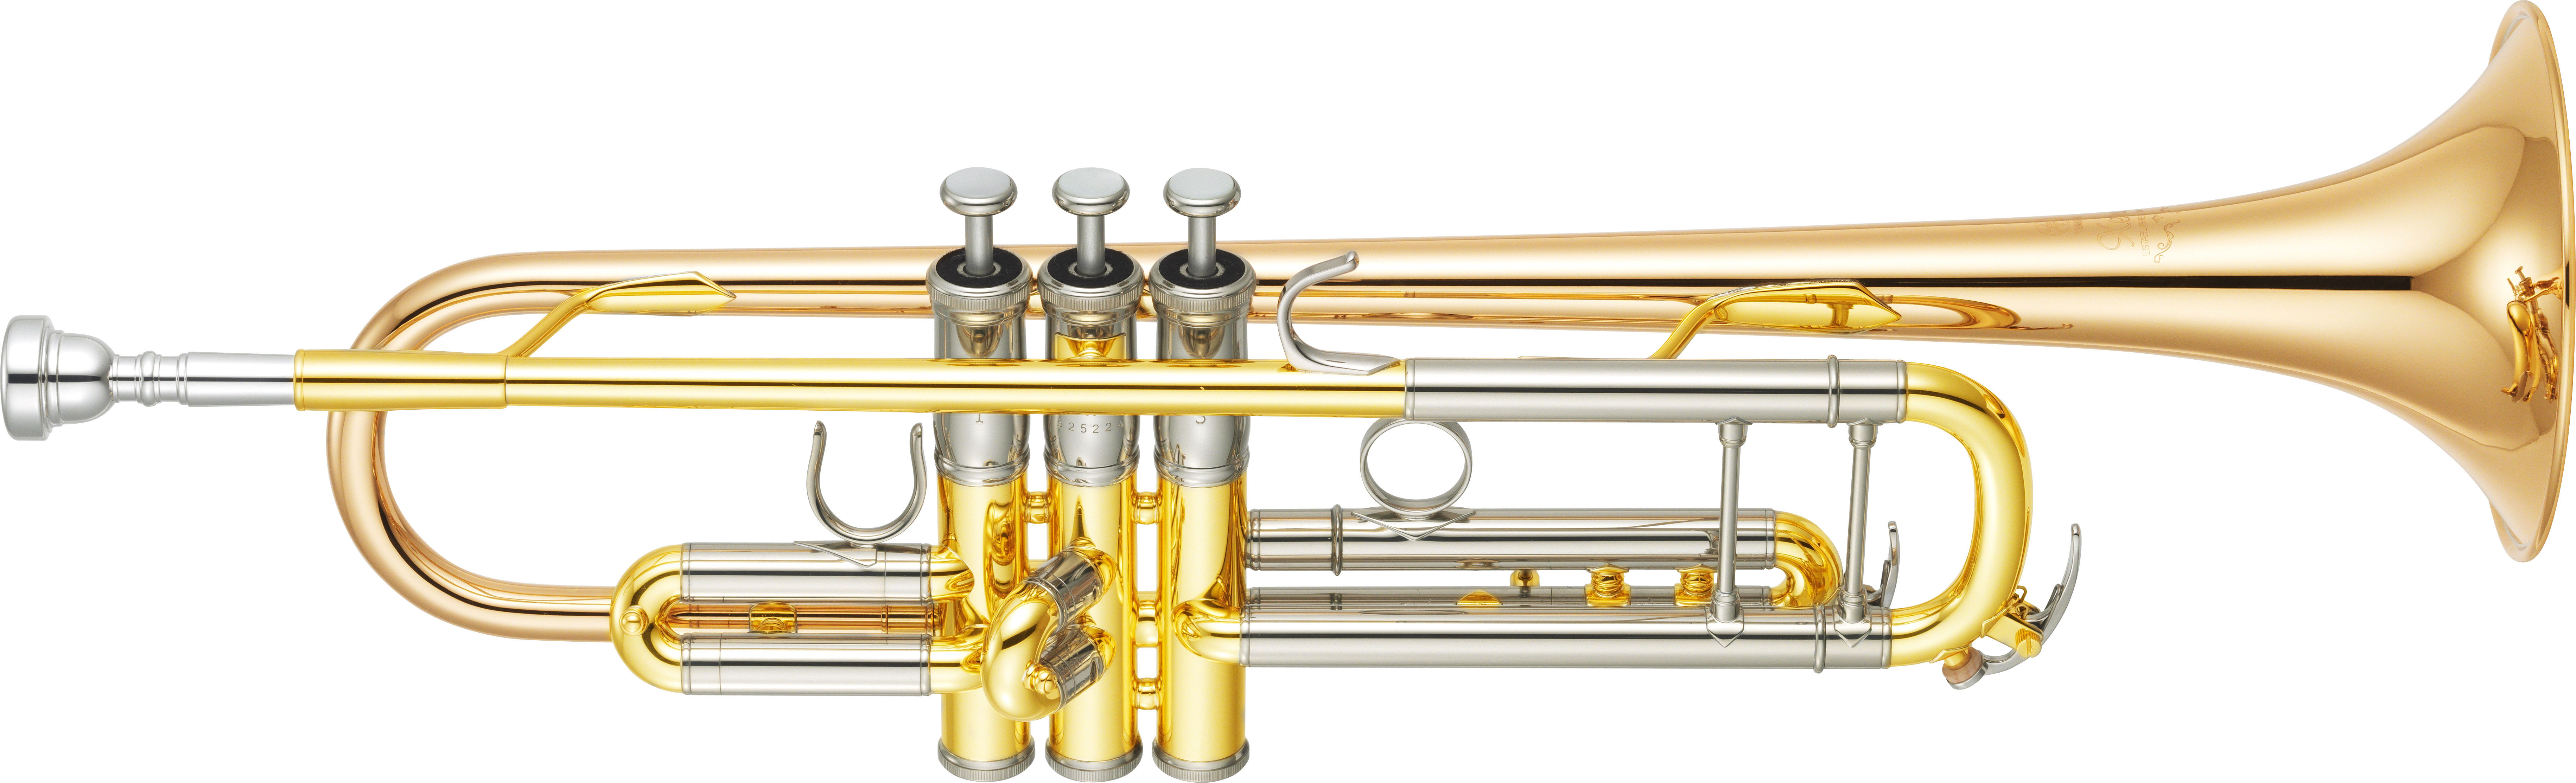 Yamaha Bb Trumpet - YTR 8335 G 04